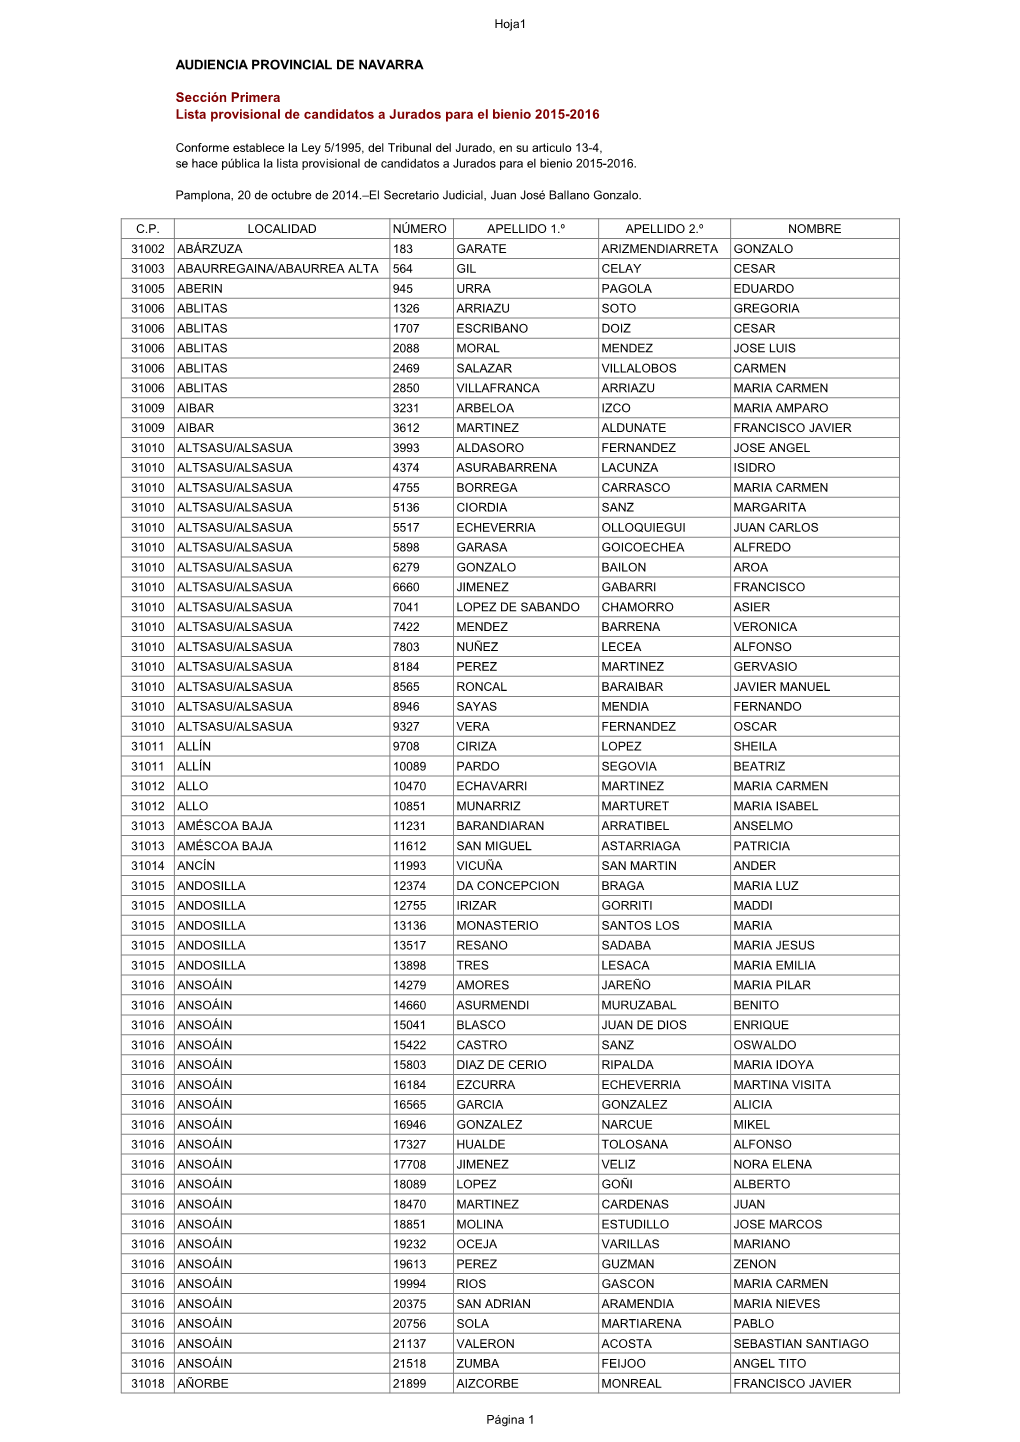 AUDIENCIA PROVINCIAL DE NAVARRA Sección Primera Lista Provisional De Candidatos a Jurados Para El Bienio 2015-2016